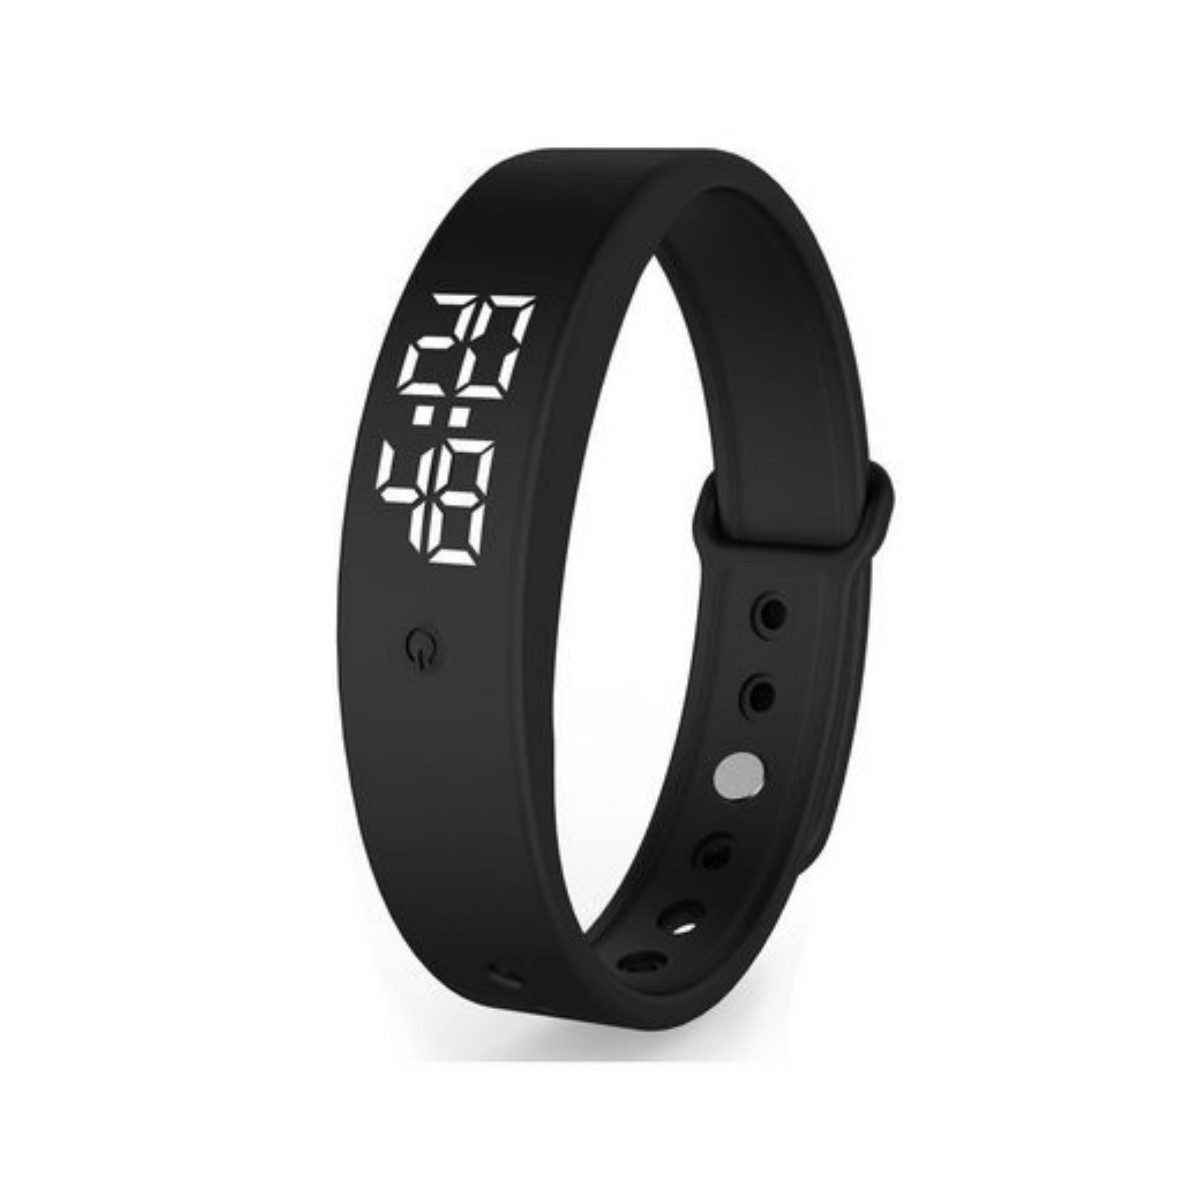 Novzep Sportuhr Intelligente Armbänder,Überwachung der Körpertemperatur,Wecker Watch